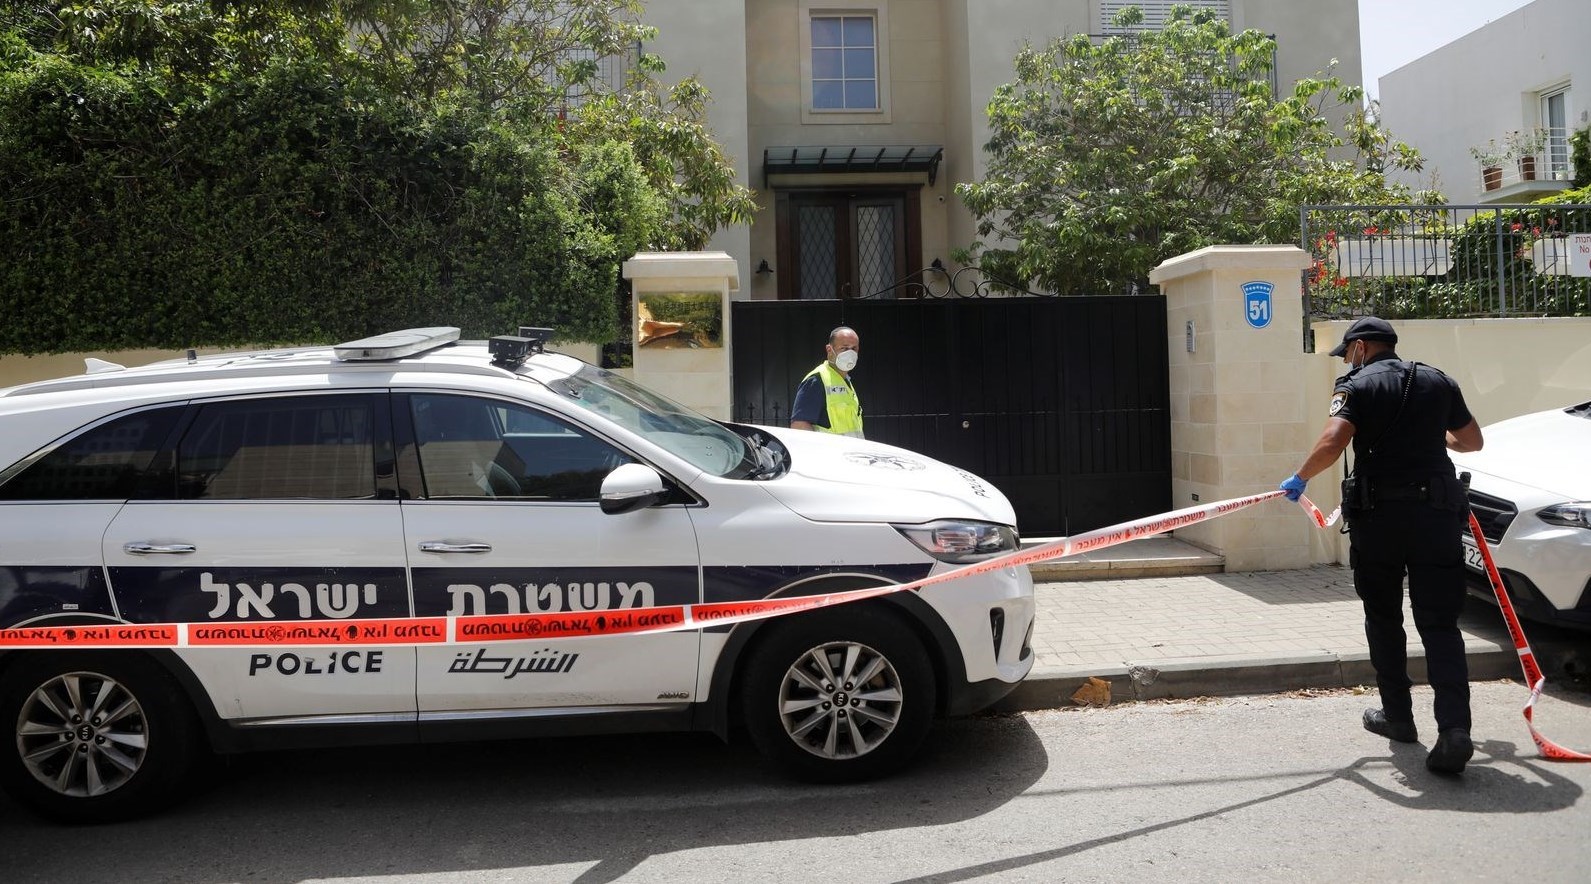 جسد سفیر چین در اسرائیل در محل اقامتش پیدا شد- اخبار آسیای غربی - اخبار ...